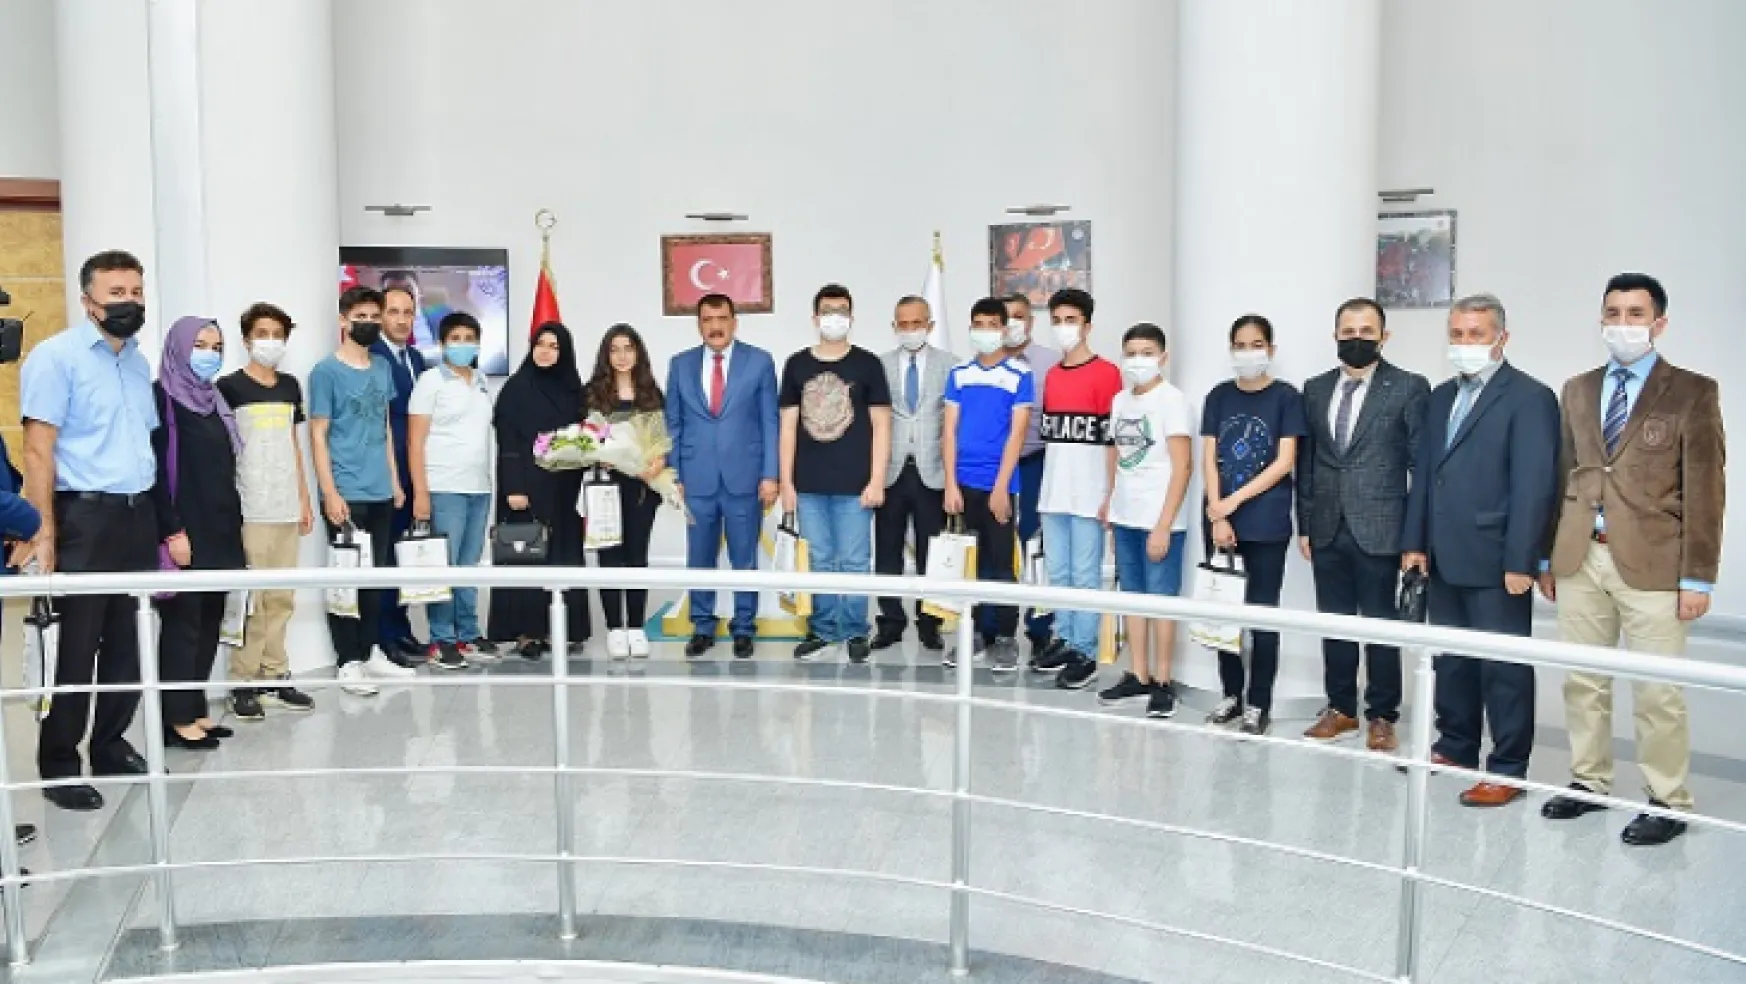 Büyükşehir Semt Konaklarında Eğitim Gören ve LGS Sınavını Kazanan Öğrenciler Başkan Gürkan'ı Ziyaret Etti